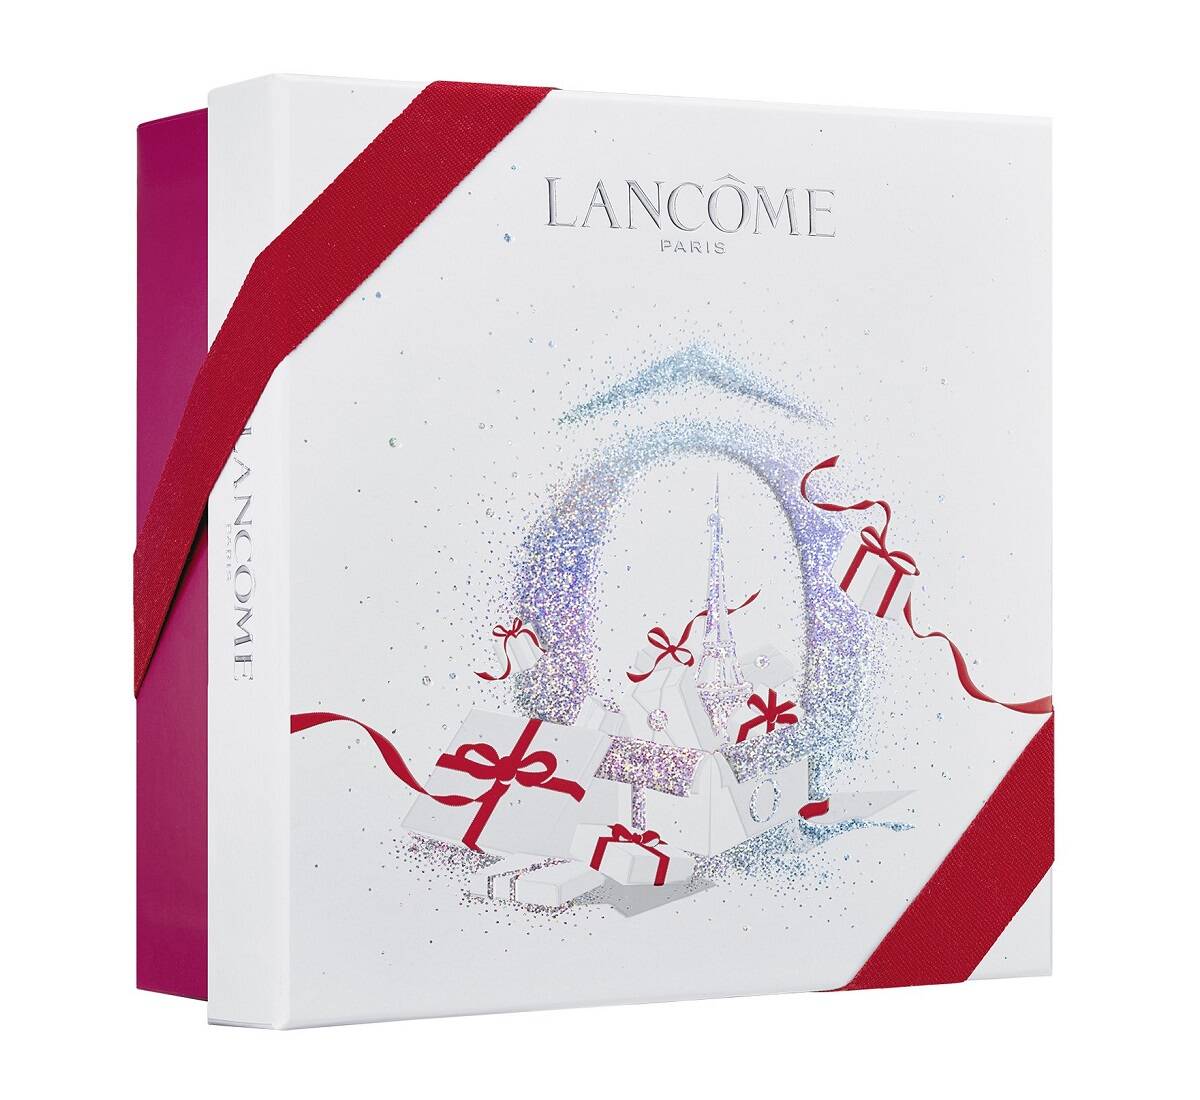 ست سرم لانکوم ژنفیک (جنفیک) 30 میلی لیتری همراه کرم روز و شب ژنفیک لانکوم ۱۵ میل + دور چشم ژنفیک ۵ میل (Lancome advanced Genifique serum 30ml skin care gift set)